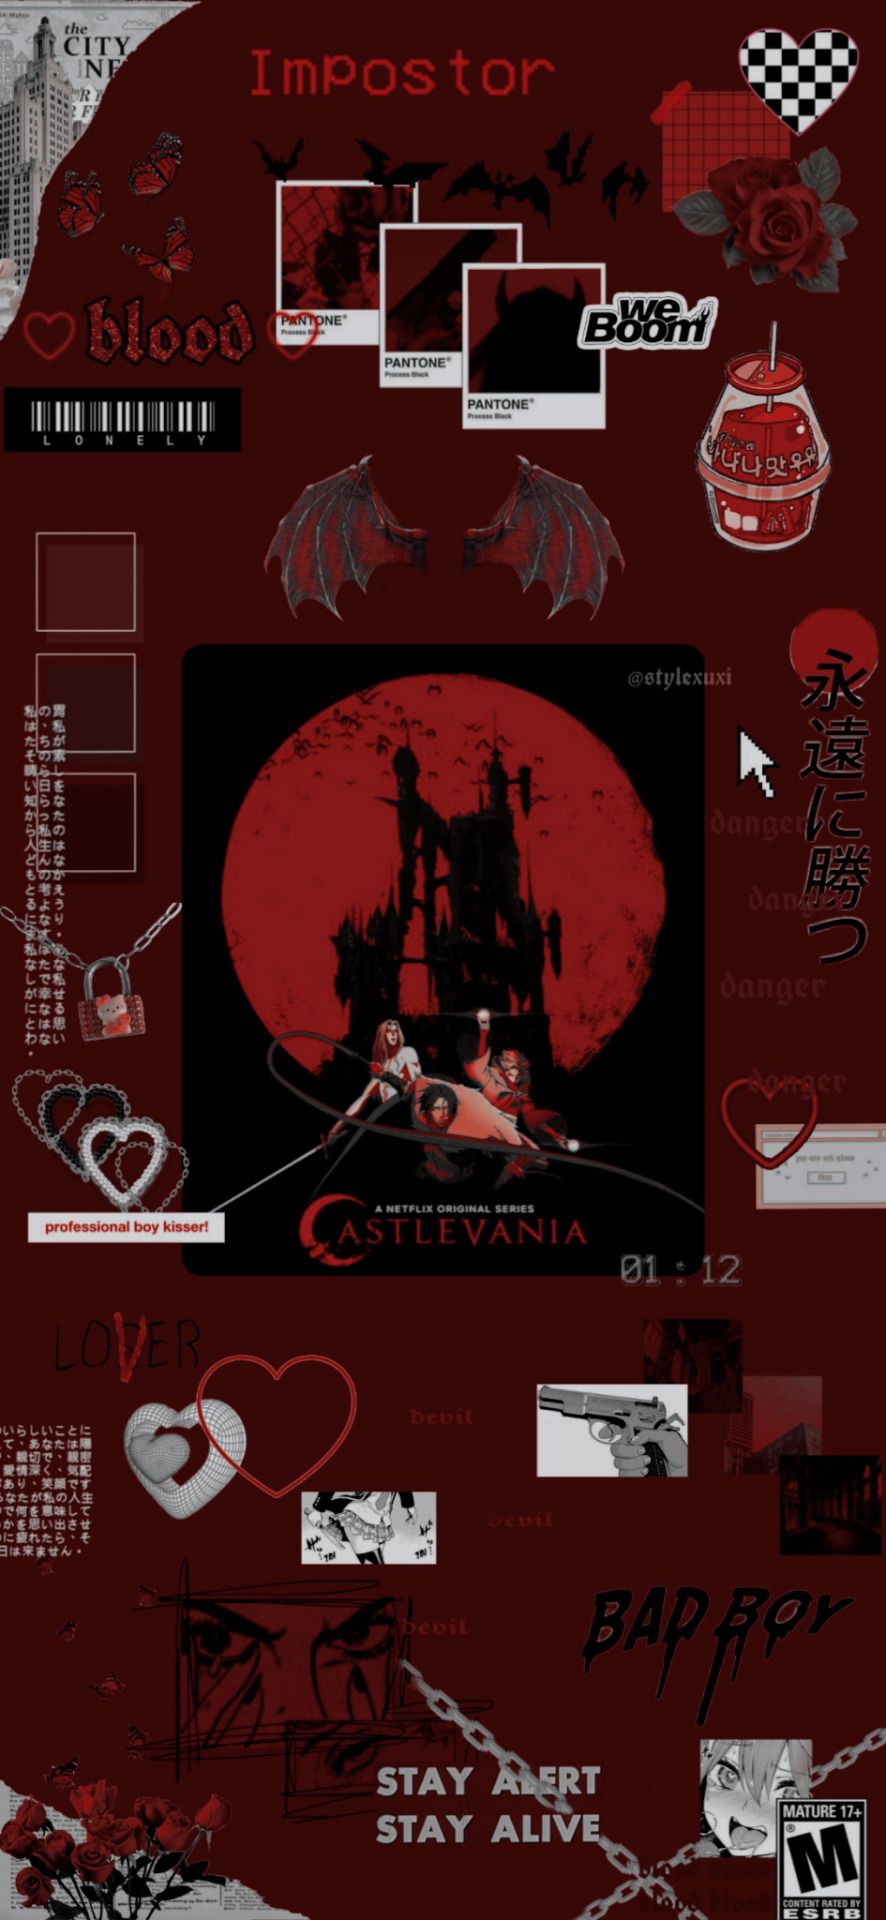  Castlevania Hintergrundbild 886x1920. Castlevania Gallery